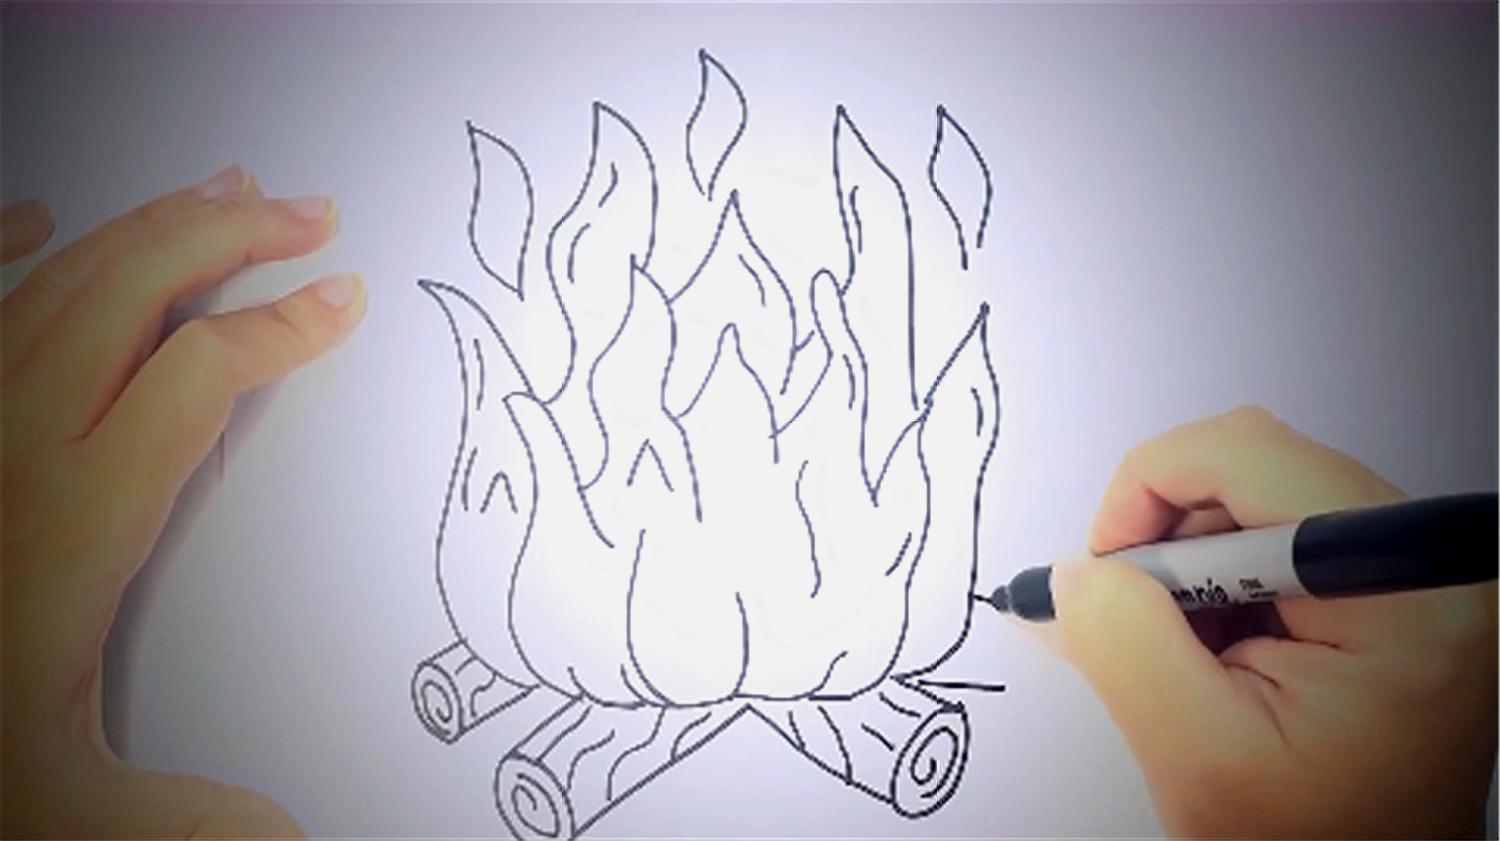 4火的简笔画步骤:先画出一个不规则形状当做火,再给火焰下面画上木柴